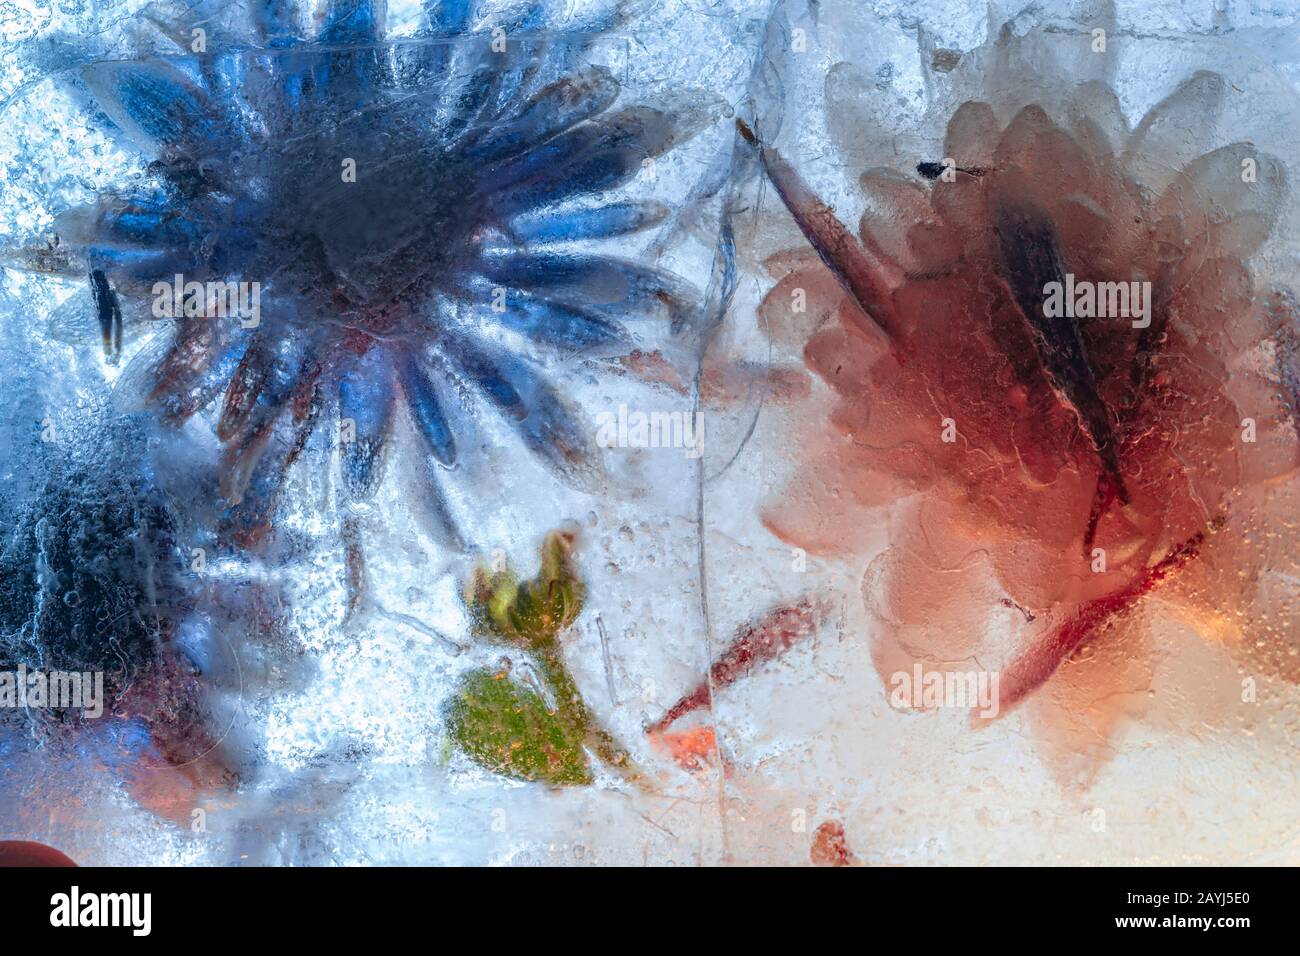 Gefrorene Blumen in dickem blauem Eisblock mit gerissener Oberfläche - Makroaufnahmen mit hoher Tonhöhe Stockfoto